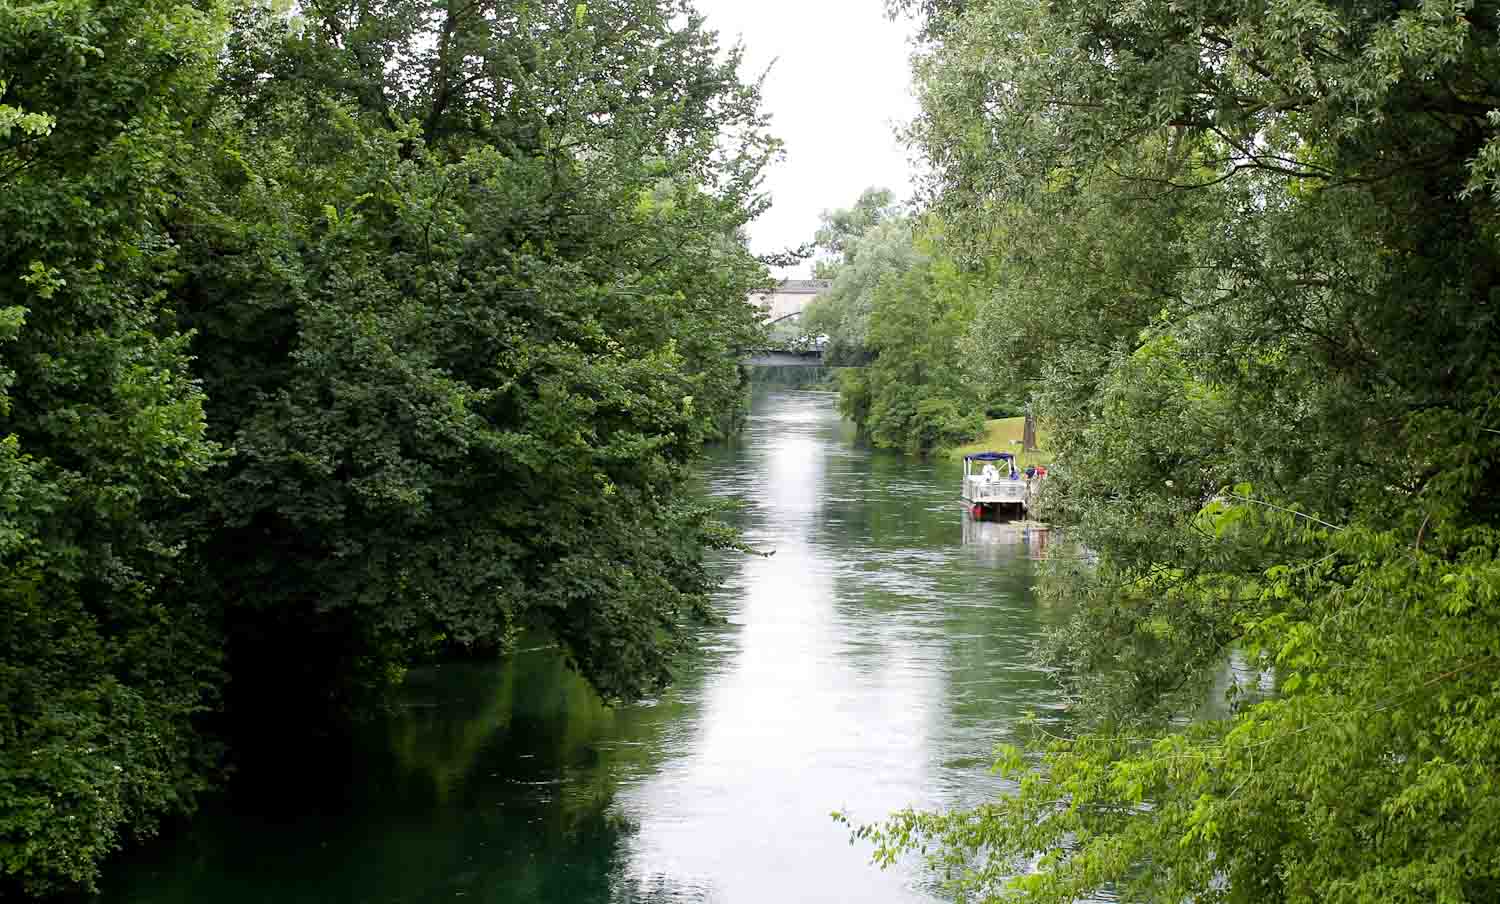 Noncello river in Pordenone